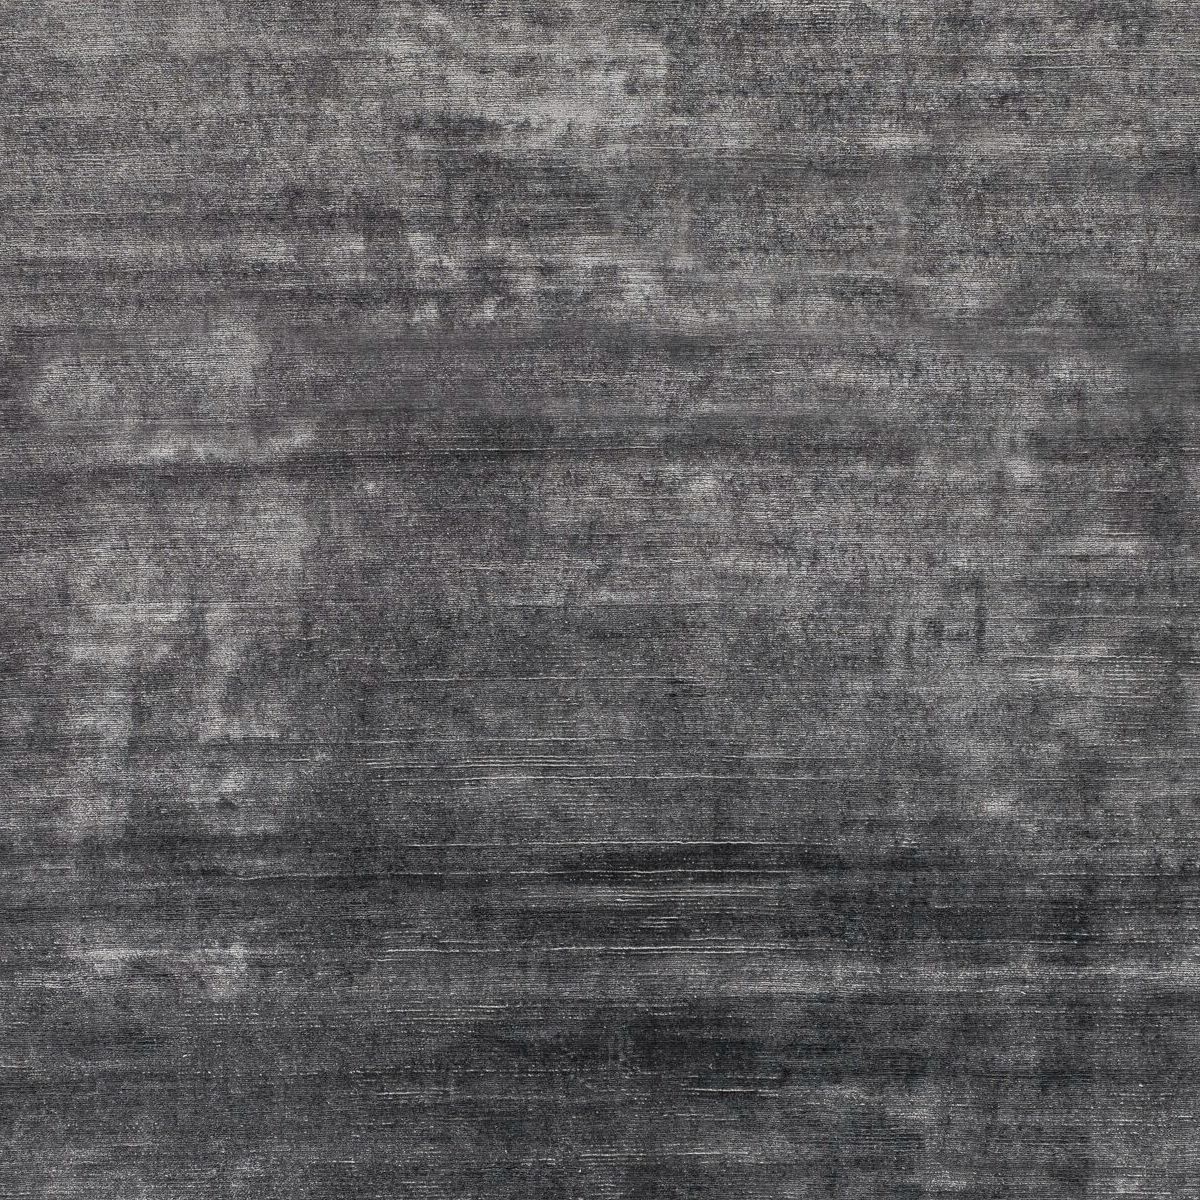 JOOP! Soft Teppich in Grau als Detailansicht.